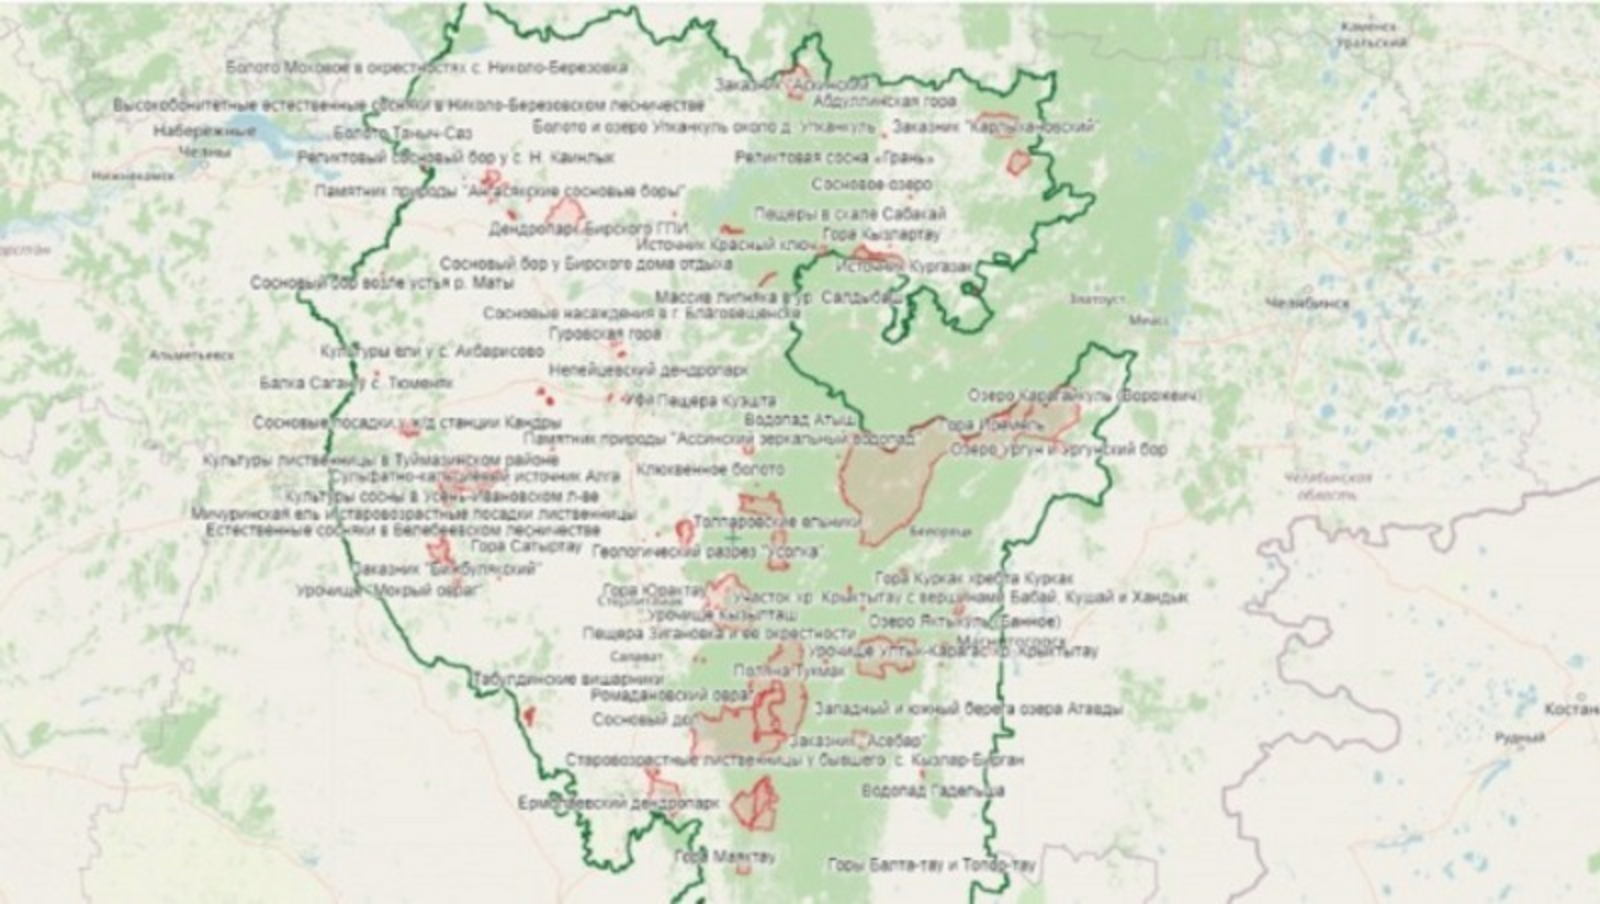 Тәбиғәт парктары дирекцияһы сайтында республиканың махсус һаҡланған тәбиғәт биләмәләренең интерактив картаһы барлыҡҡа килде